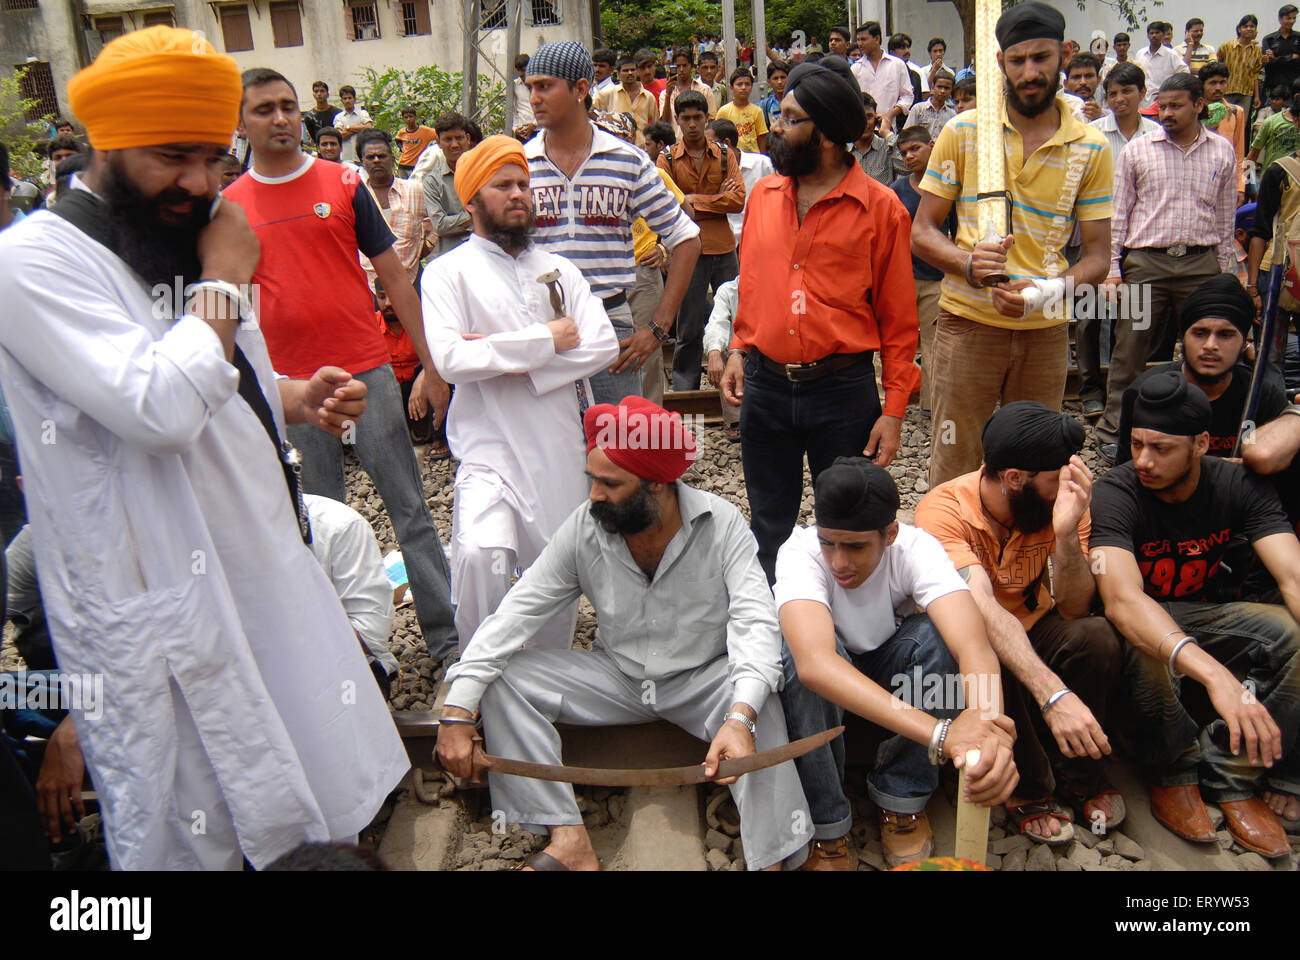 La communauté sikh trains bloc protester contre le feu du corps de dera saccha sauda chef ram rahim à Mulund Banque D'Images